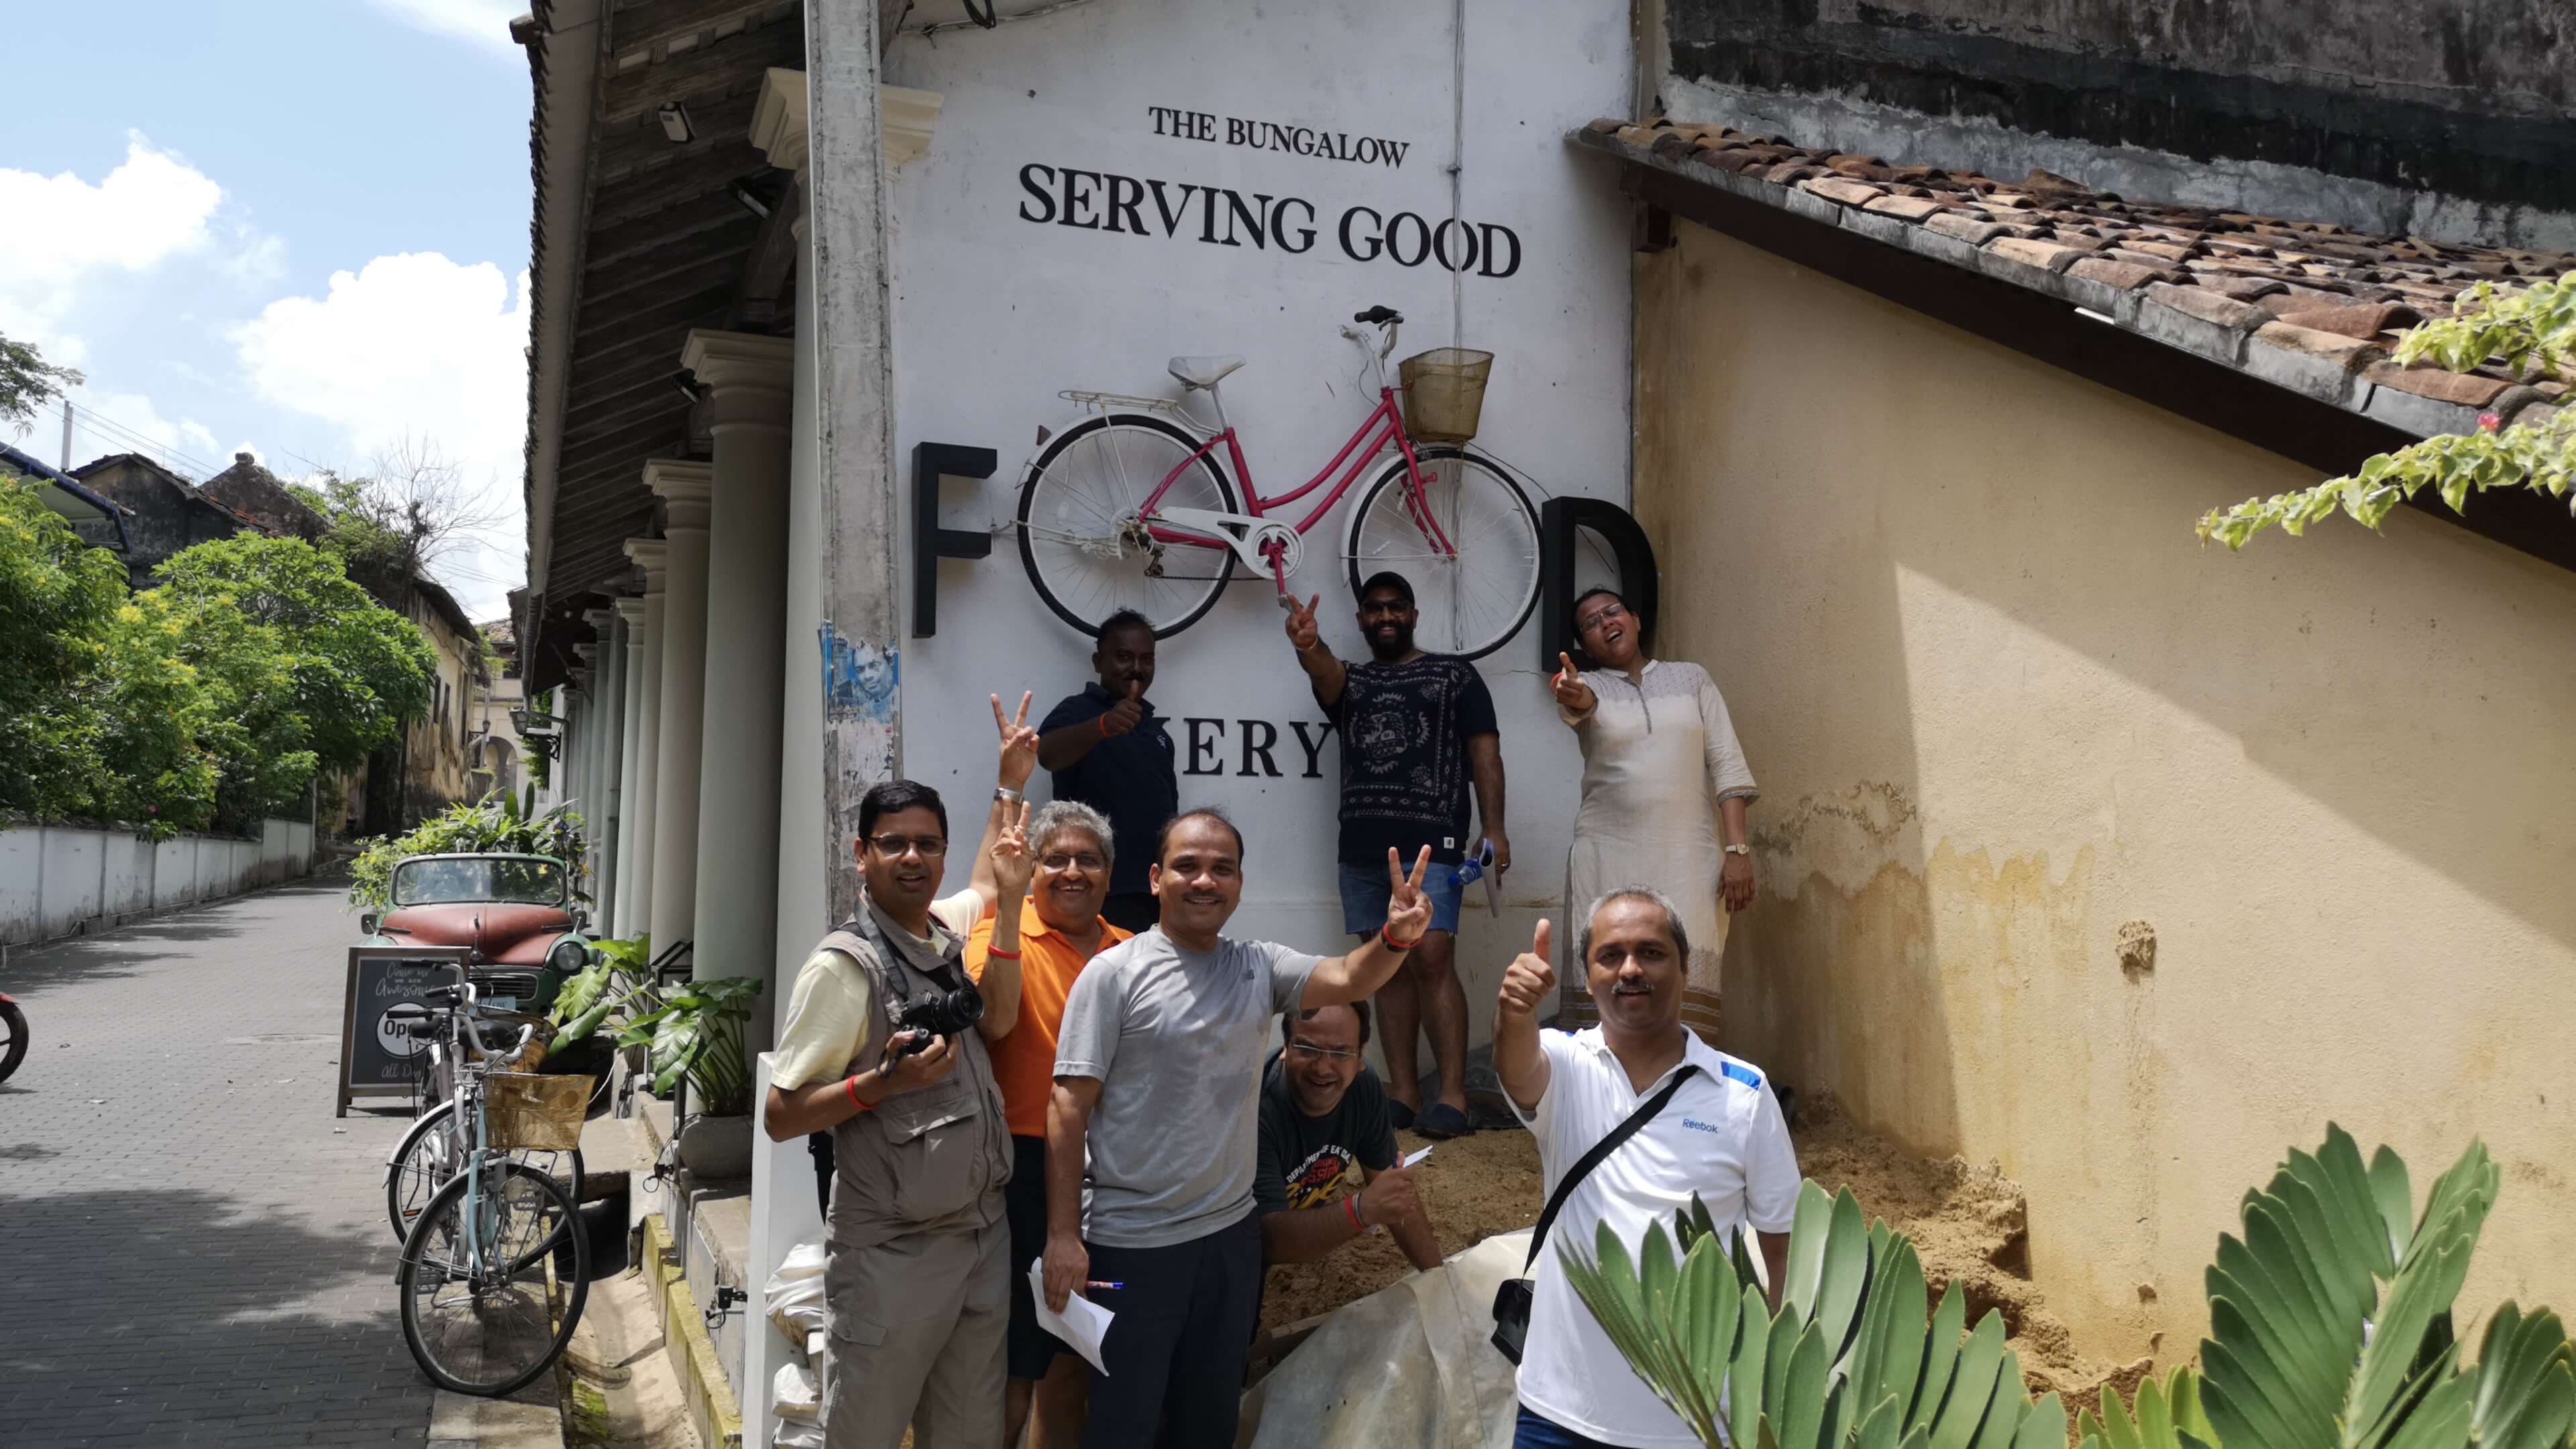 Посещение бунгало "Serving Good Food" Шри-Ланка.